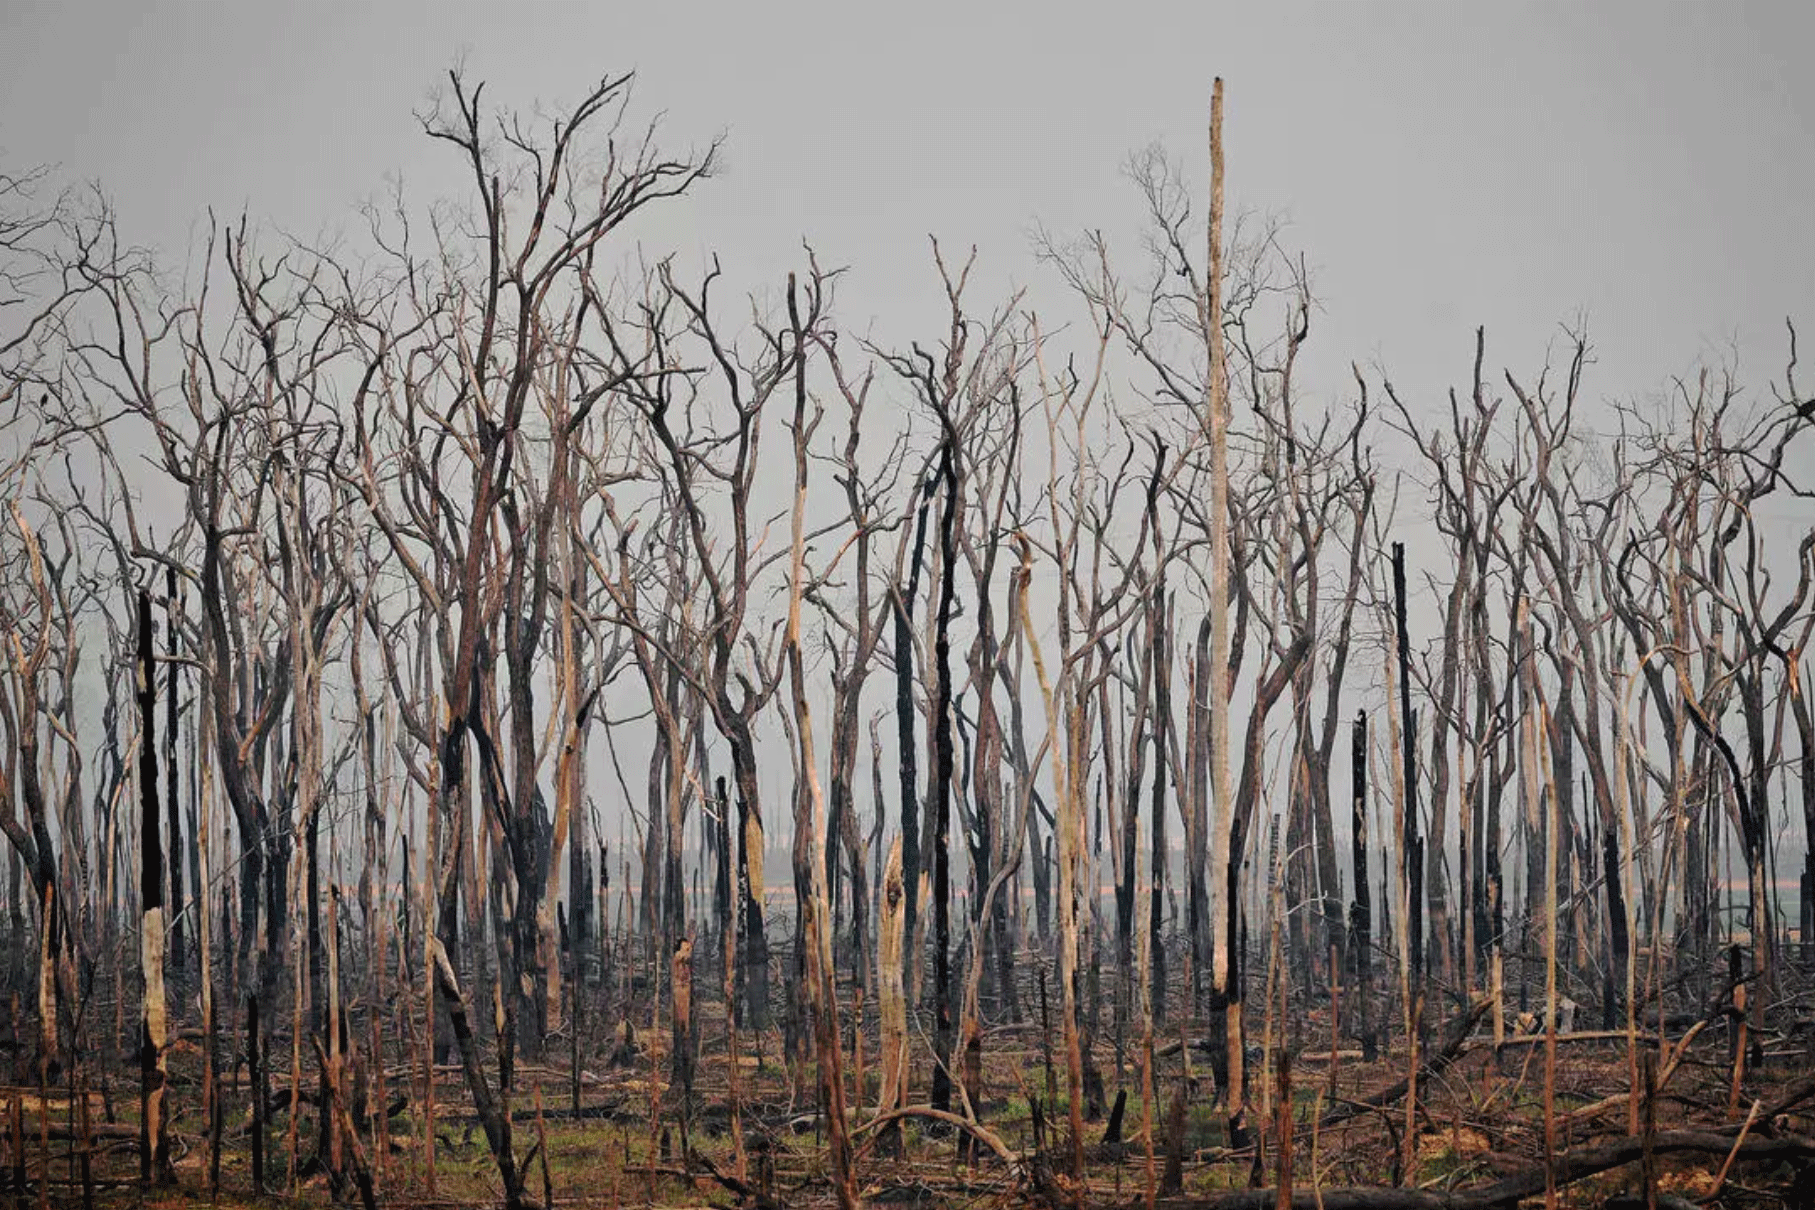 أشجار متفحمة في غابة الأمازون بالقرب من أبونا في ولاية روندونيا في البرازيل في 24 أغسطس 2019 